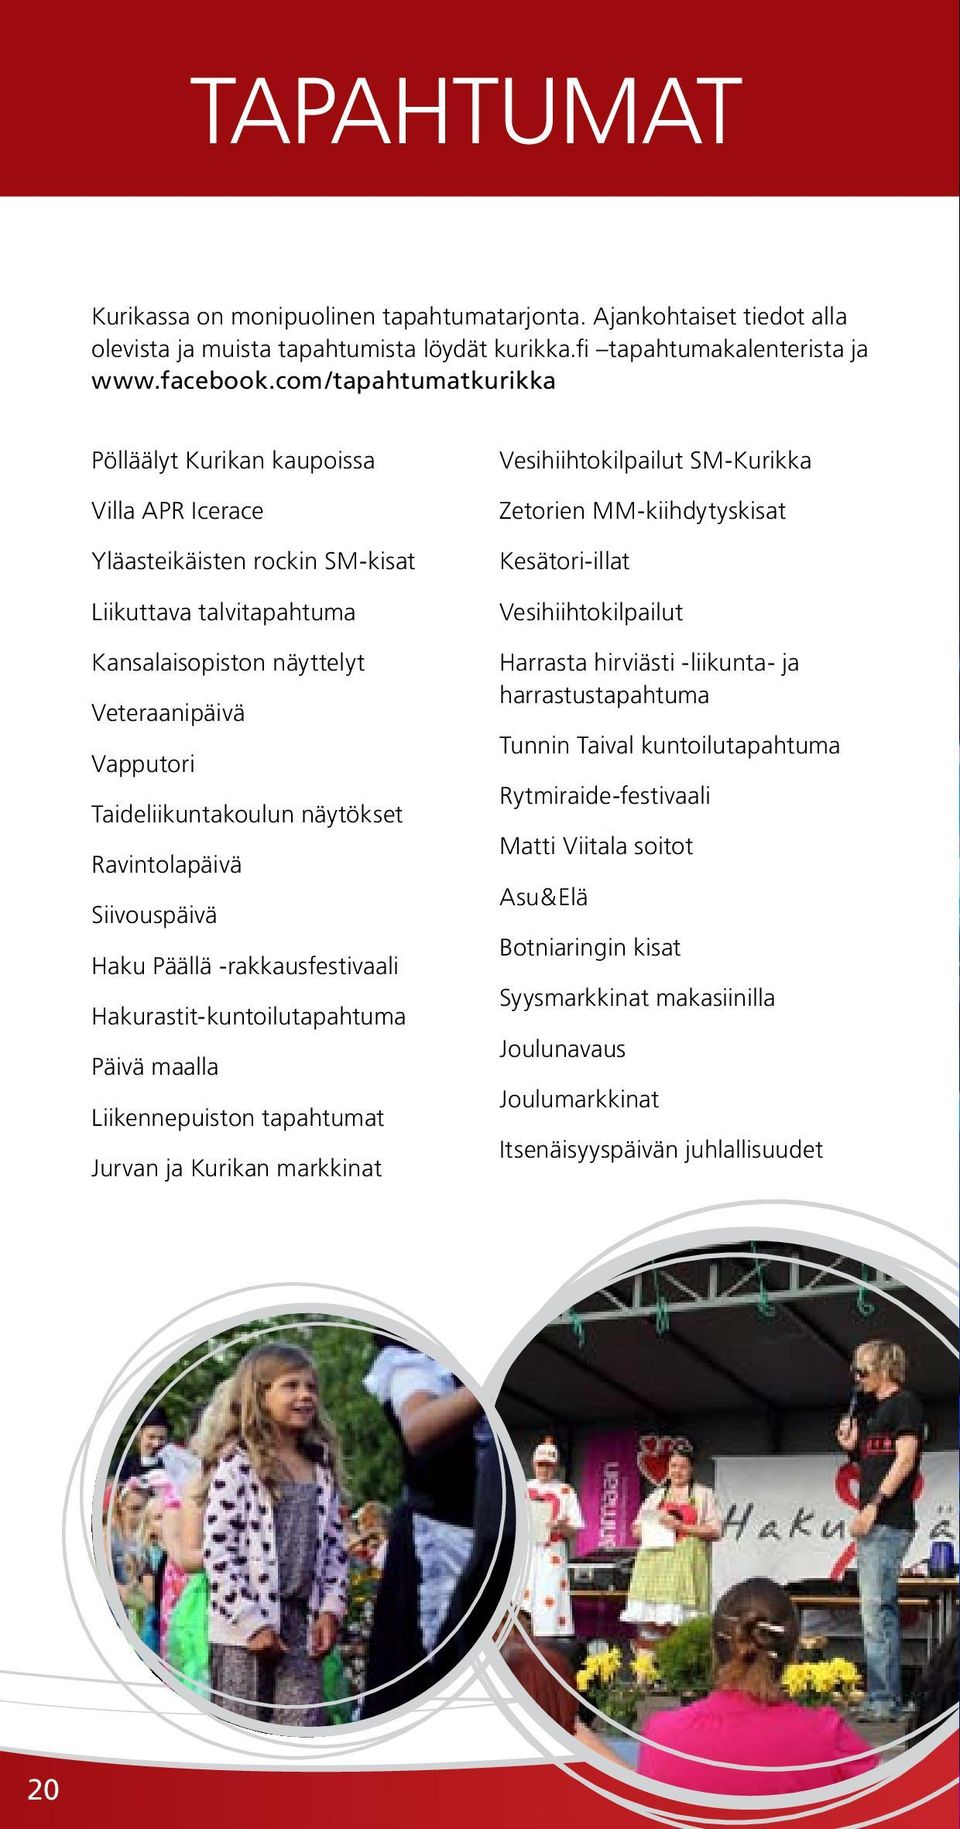 näytökset Ravintolapäivä Siivouspäivä Haku Päällä -rakkausfestivaali Hakurastit-kuntoilutapahtuma Päivä maalla Liikennepuiston tapahtumat Jurvan ja Kurikan markkinat Vesihiihtokilpailut SM-Kurikka